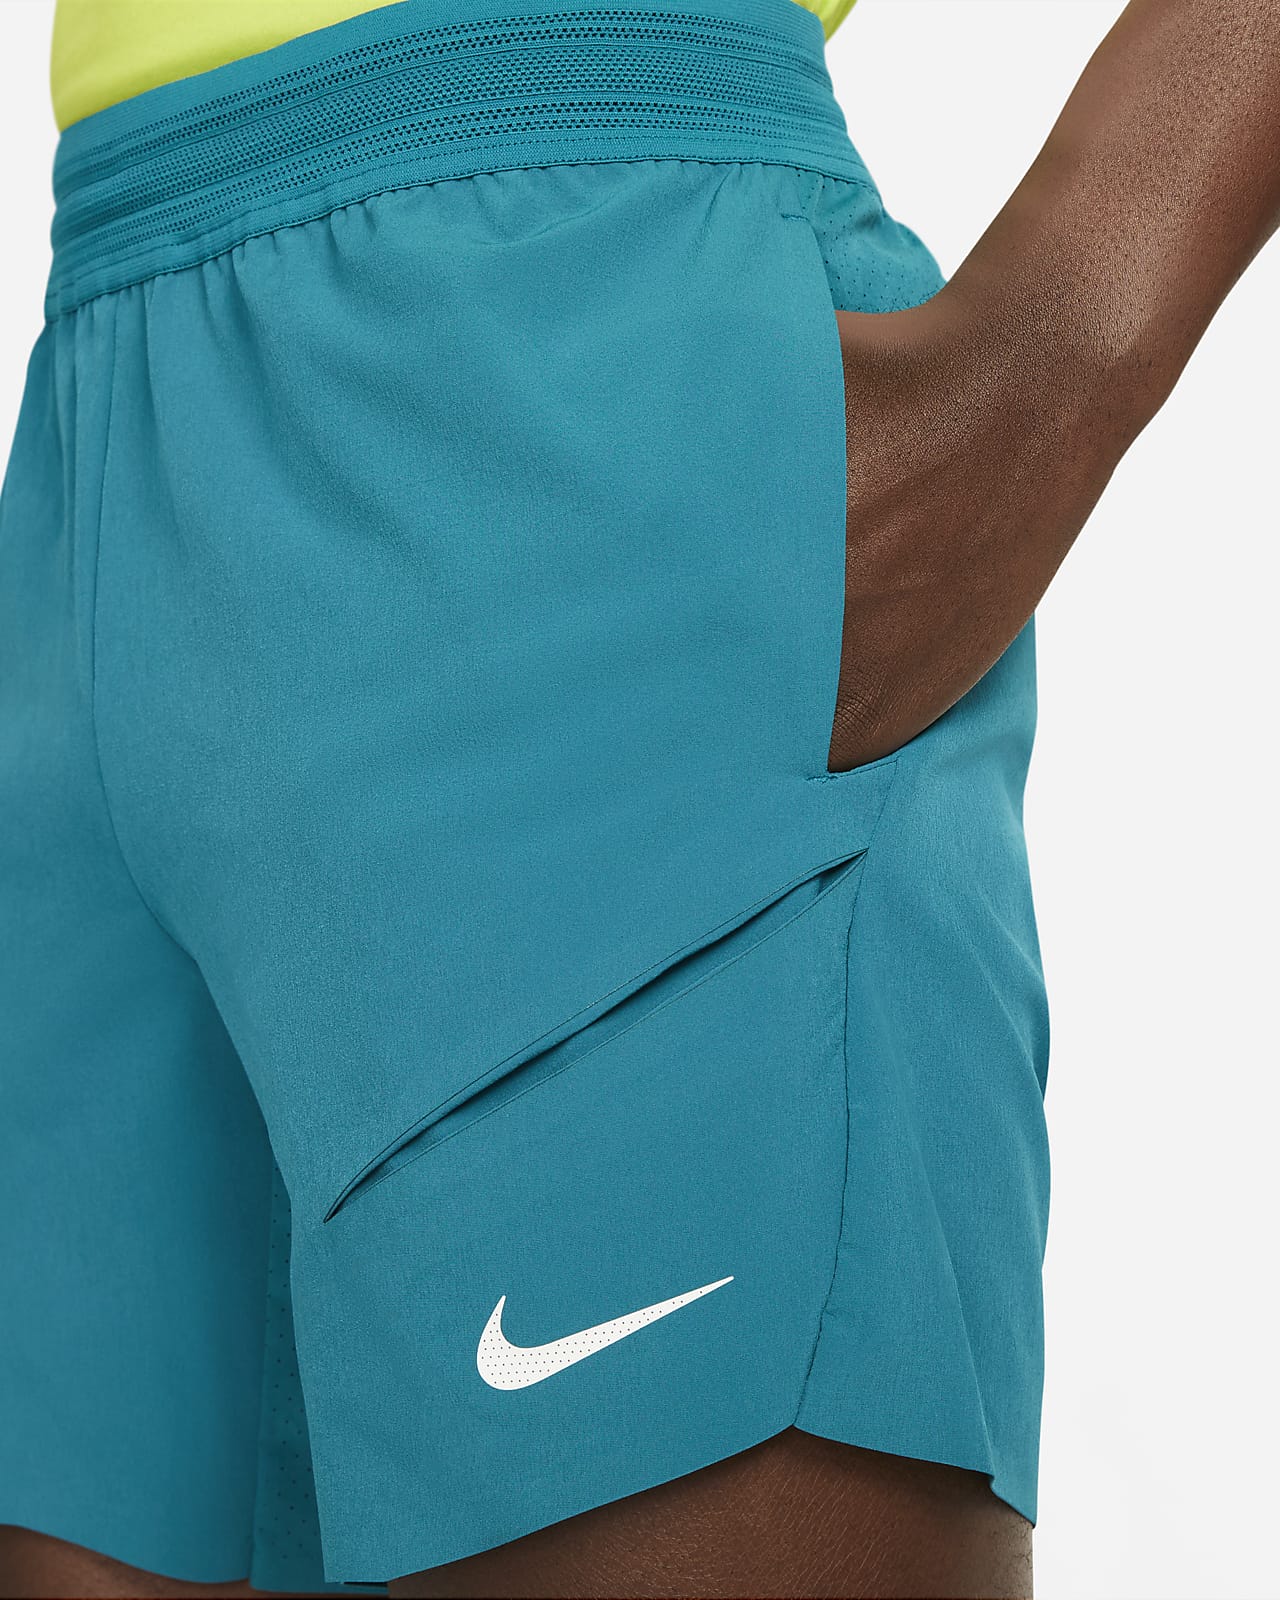 NikeCourt Dri-FIT Rafa Pantalón corto tenis de 18 cm- Hombre. ES